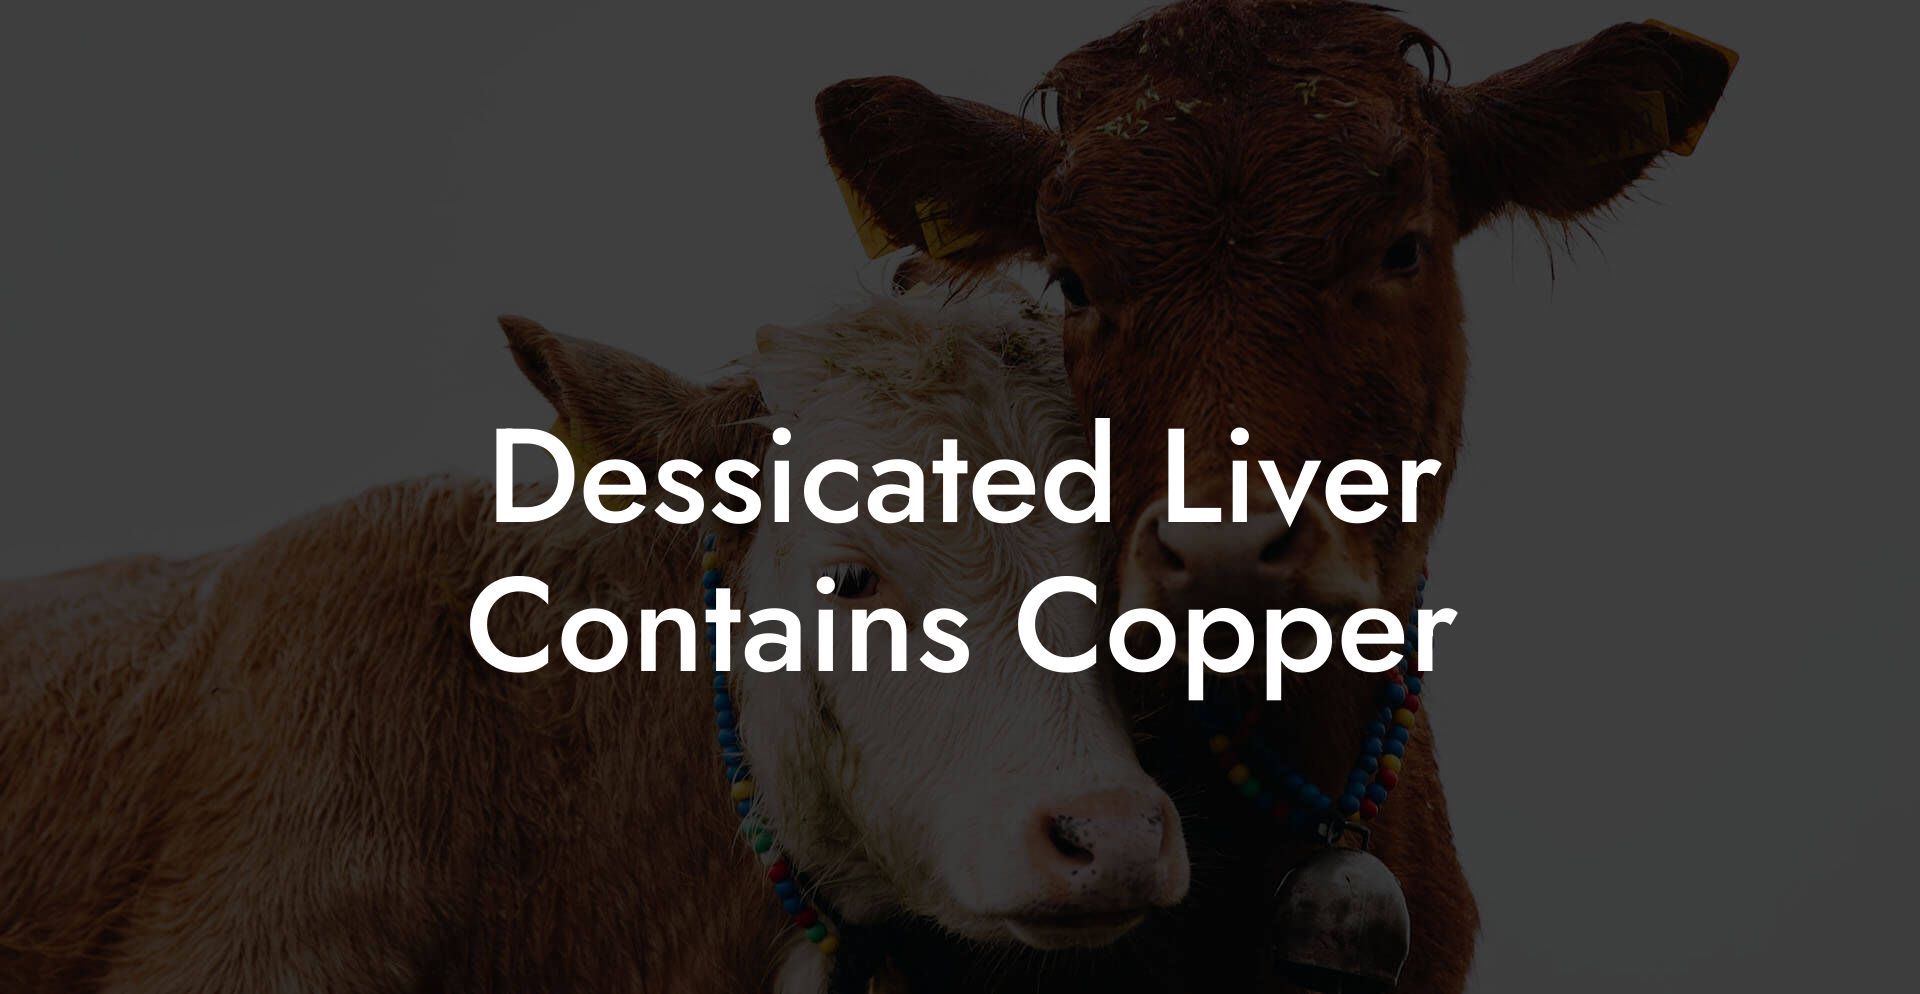 Dessicated Liver Contains Copper